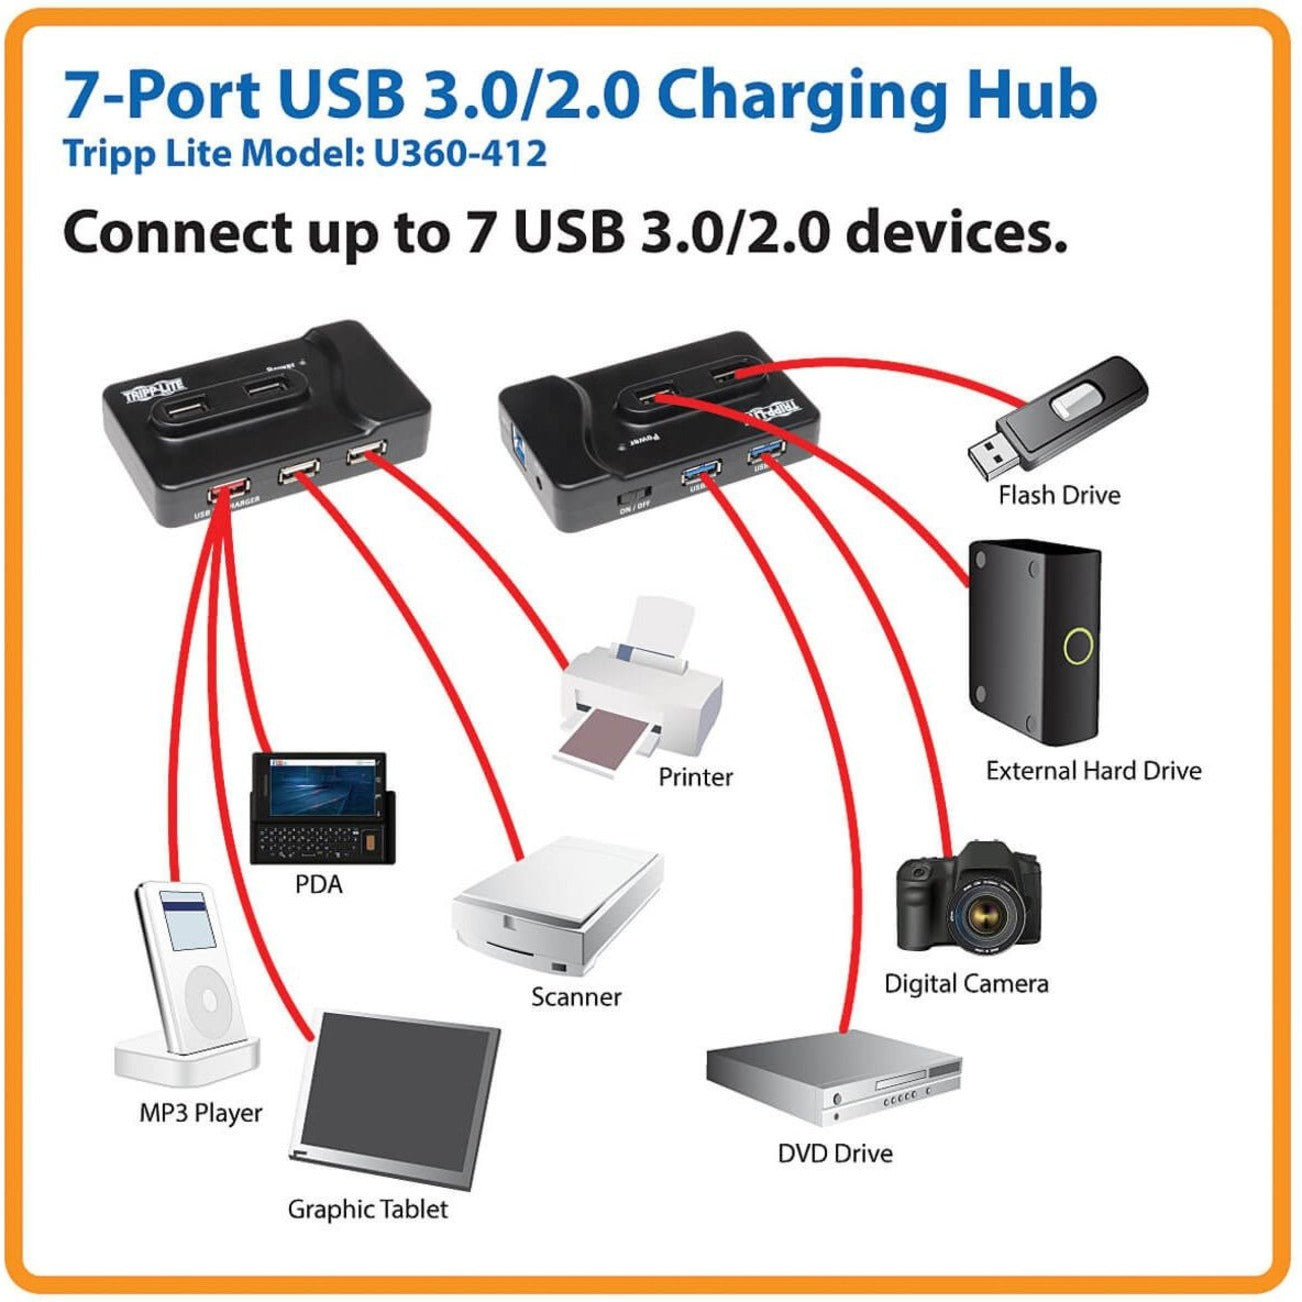 Tripp Lite U360-412 USB 3.0 Charging Hub - 2 x USB3.0, 4 x USB 2.0, 1 x Charging iPad2, 7-Port USB Hub